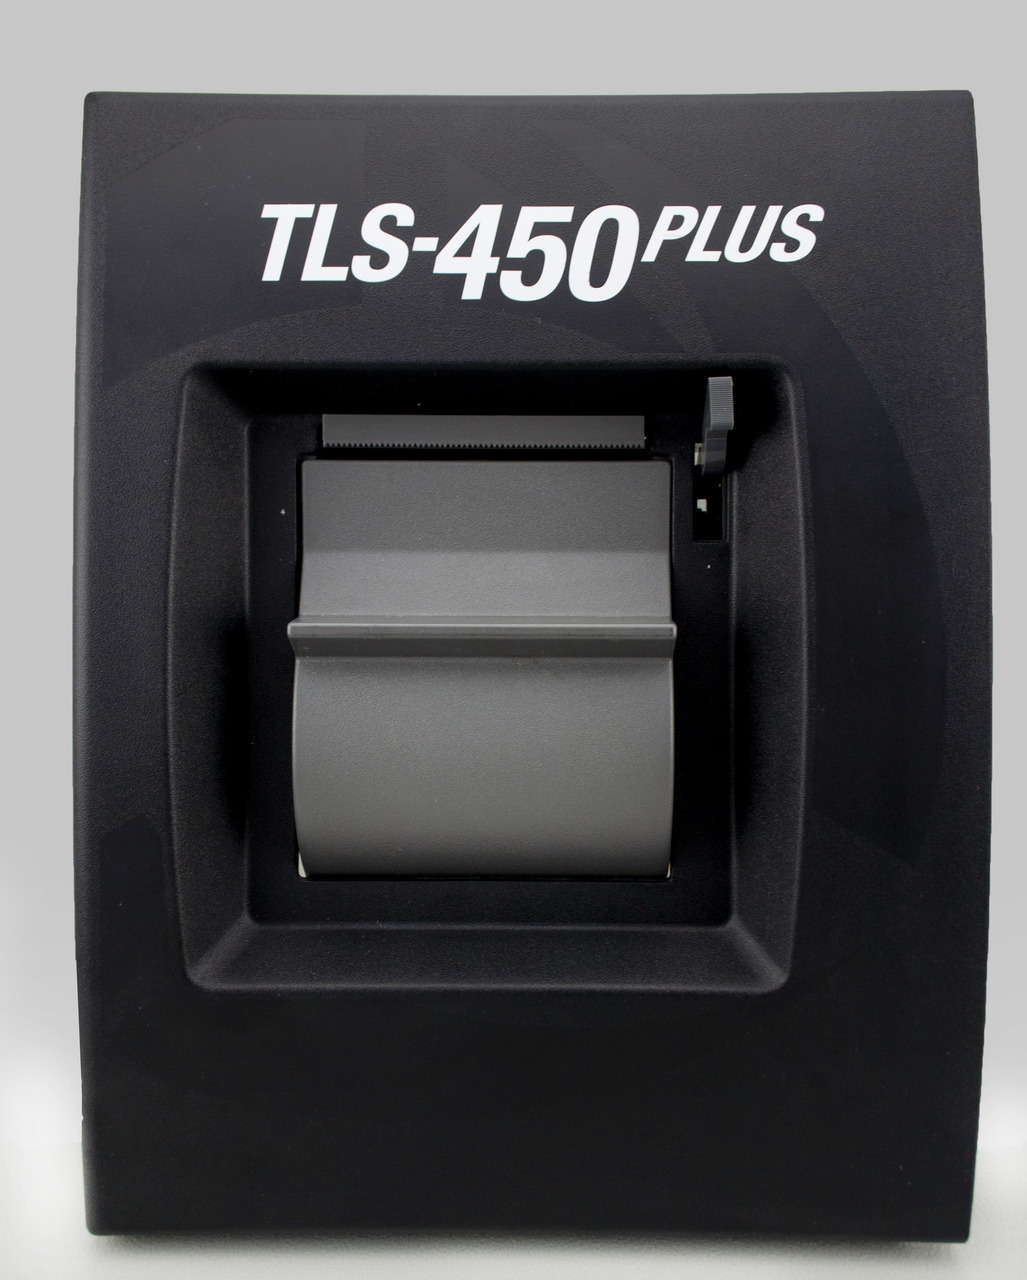 TLS-450 PLUS PRINTER - BLACK DOOR, Fits Veeder Root Image